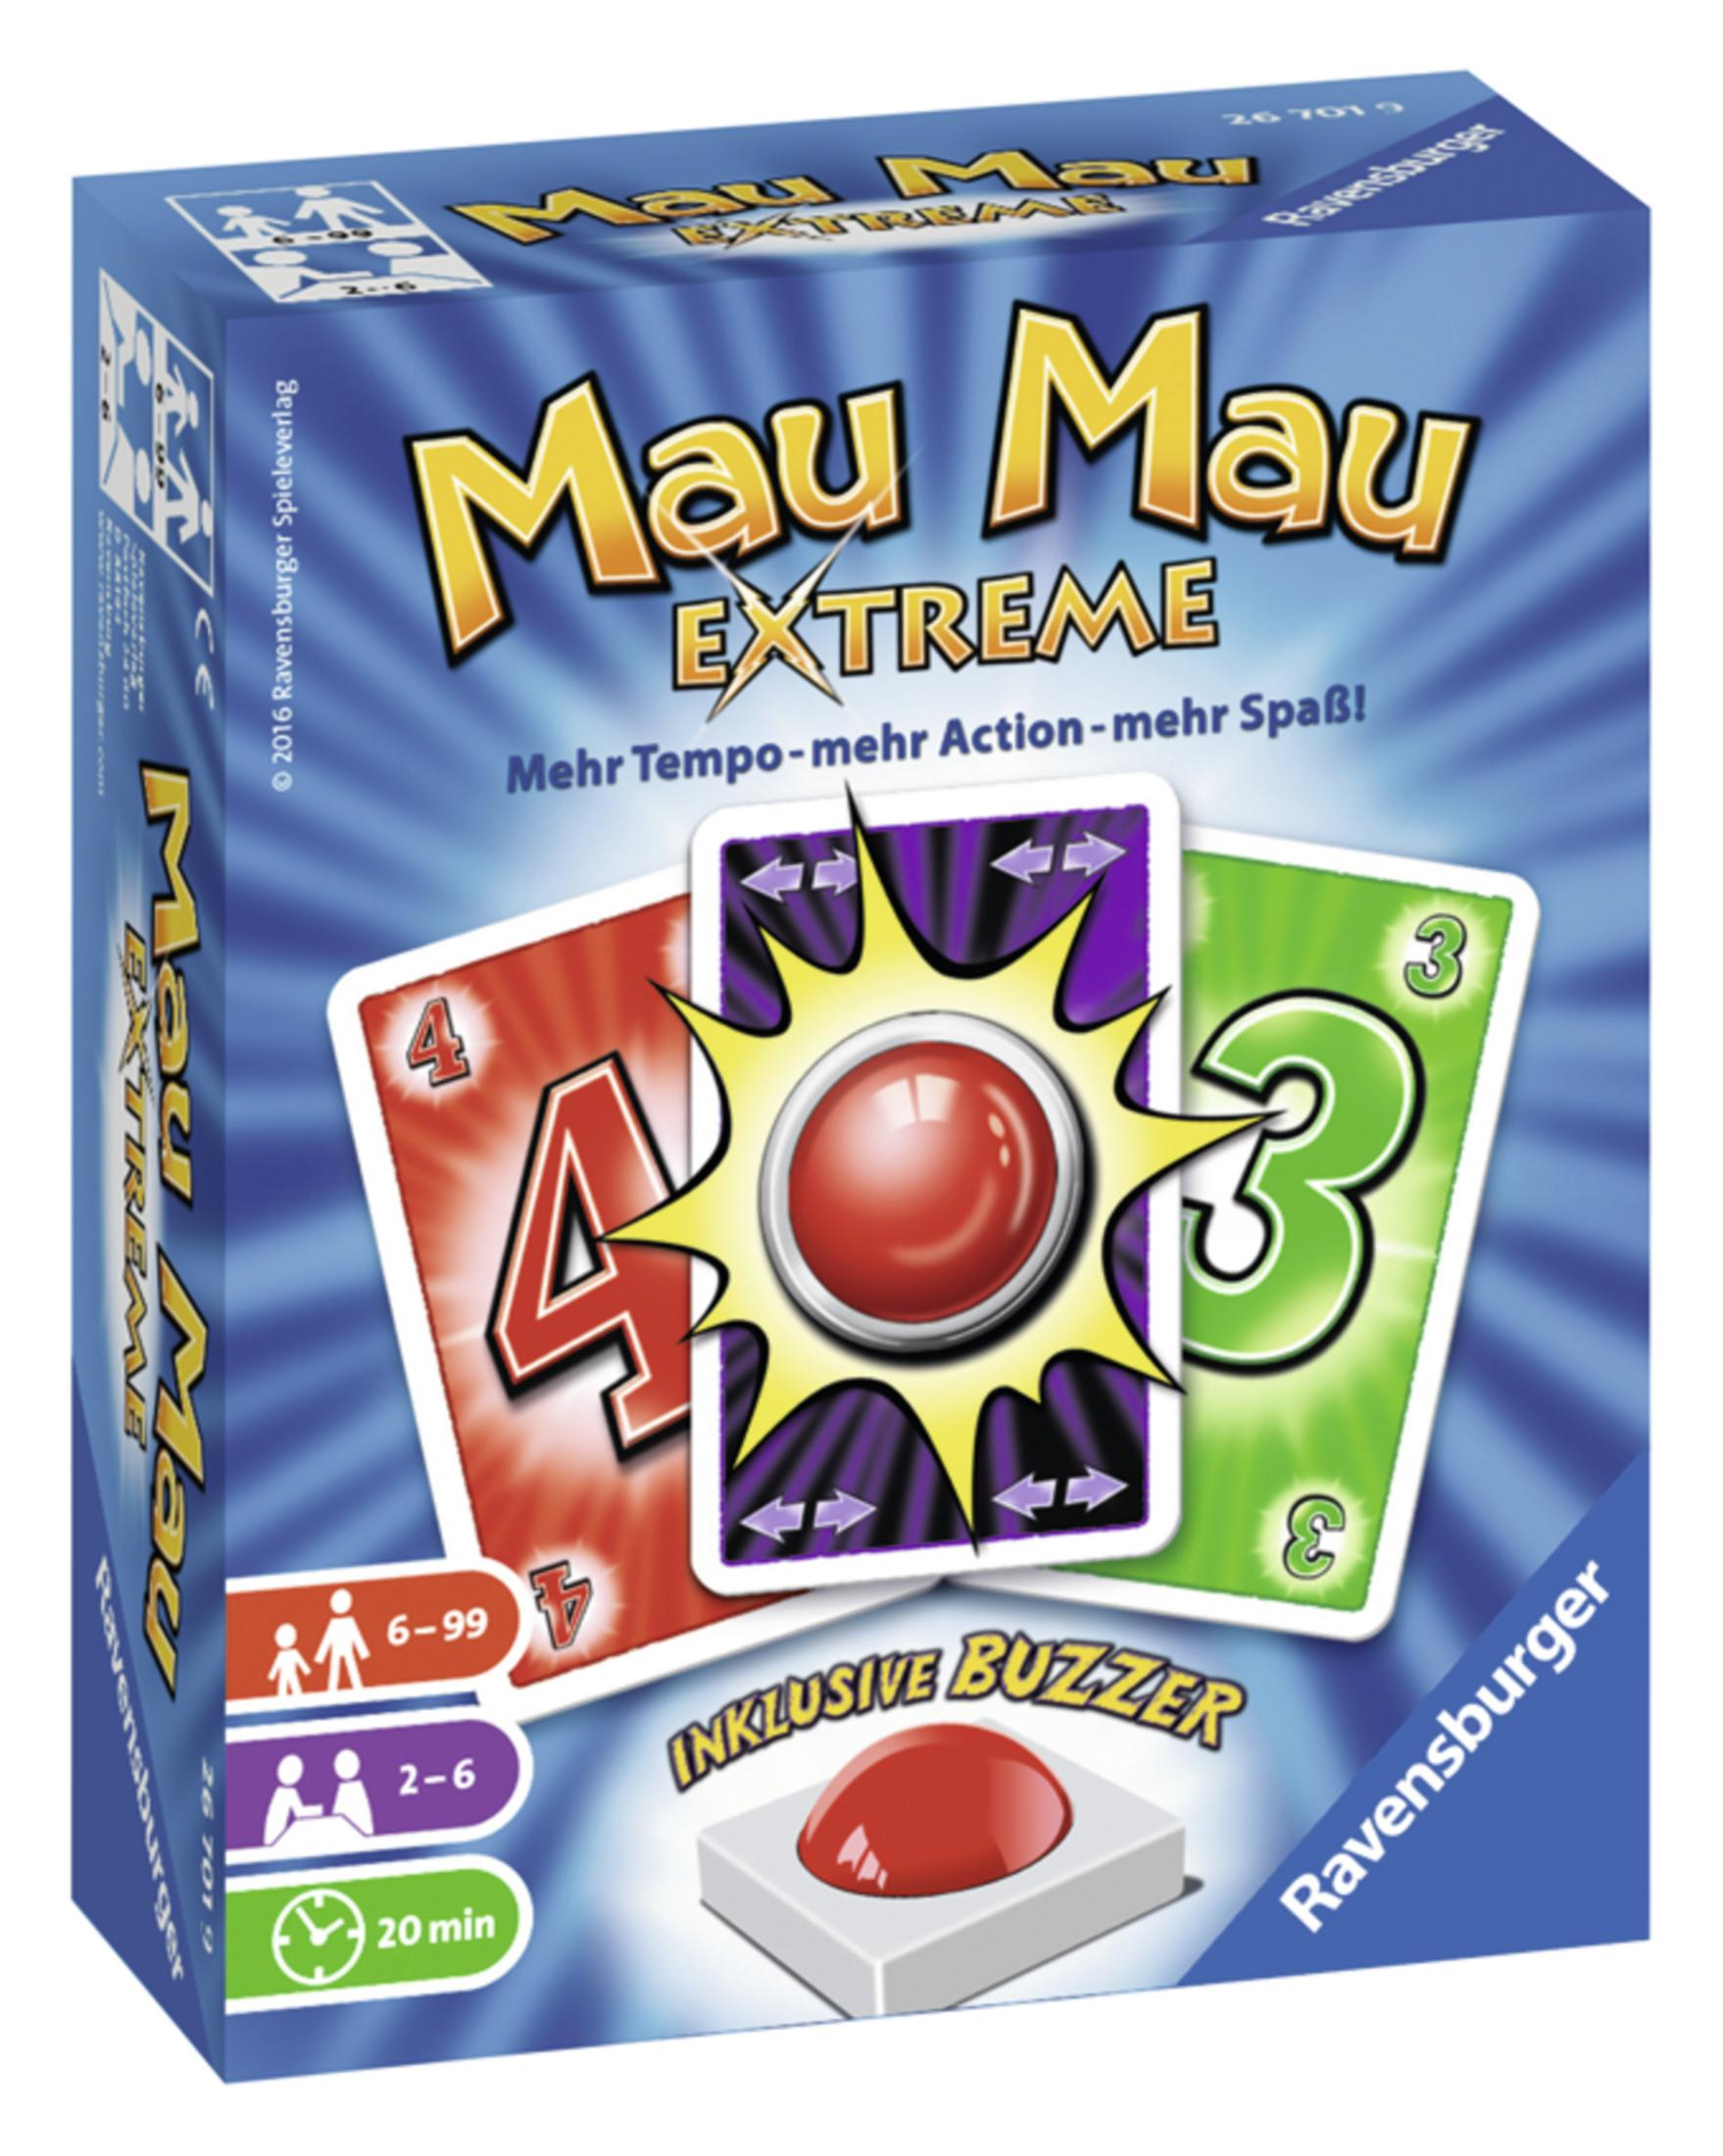 Extreme MAU EXTREME 26701 RAVENSBURGER Mau MAU Mau